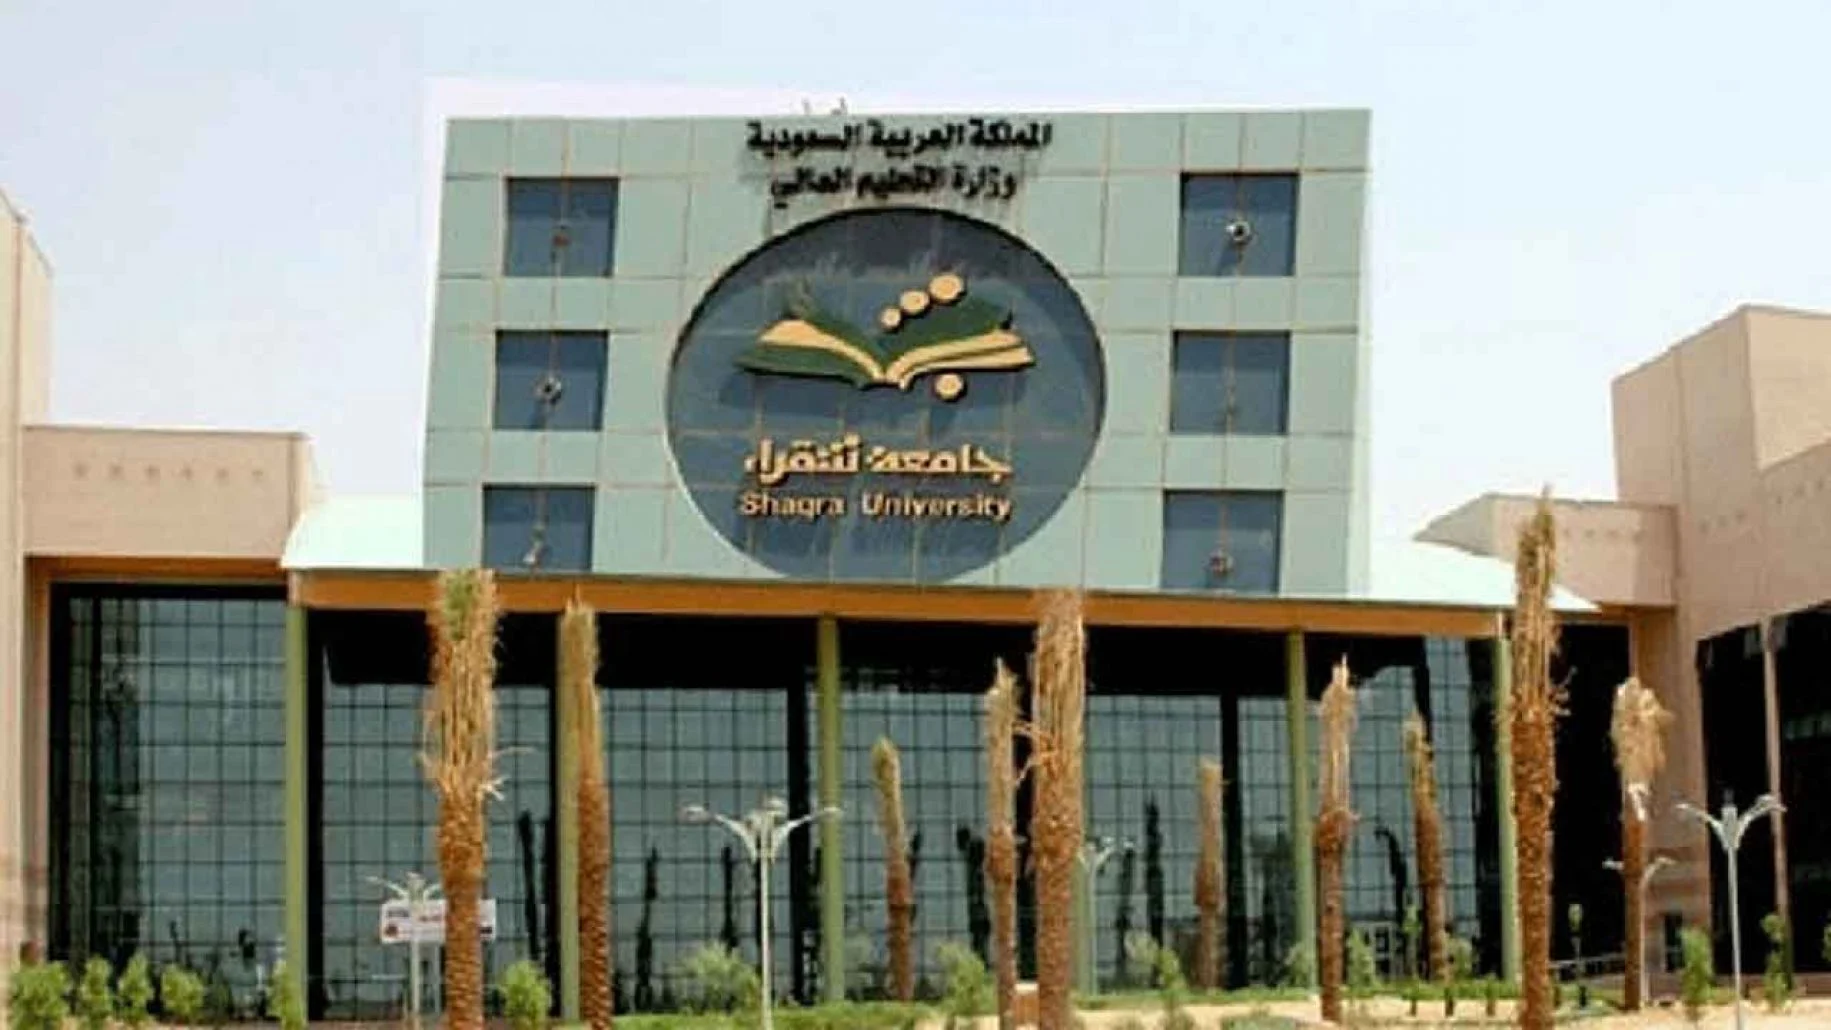 صورة جامعة شقراء عمادة القبول والتسجيل 1444 للطالبات